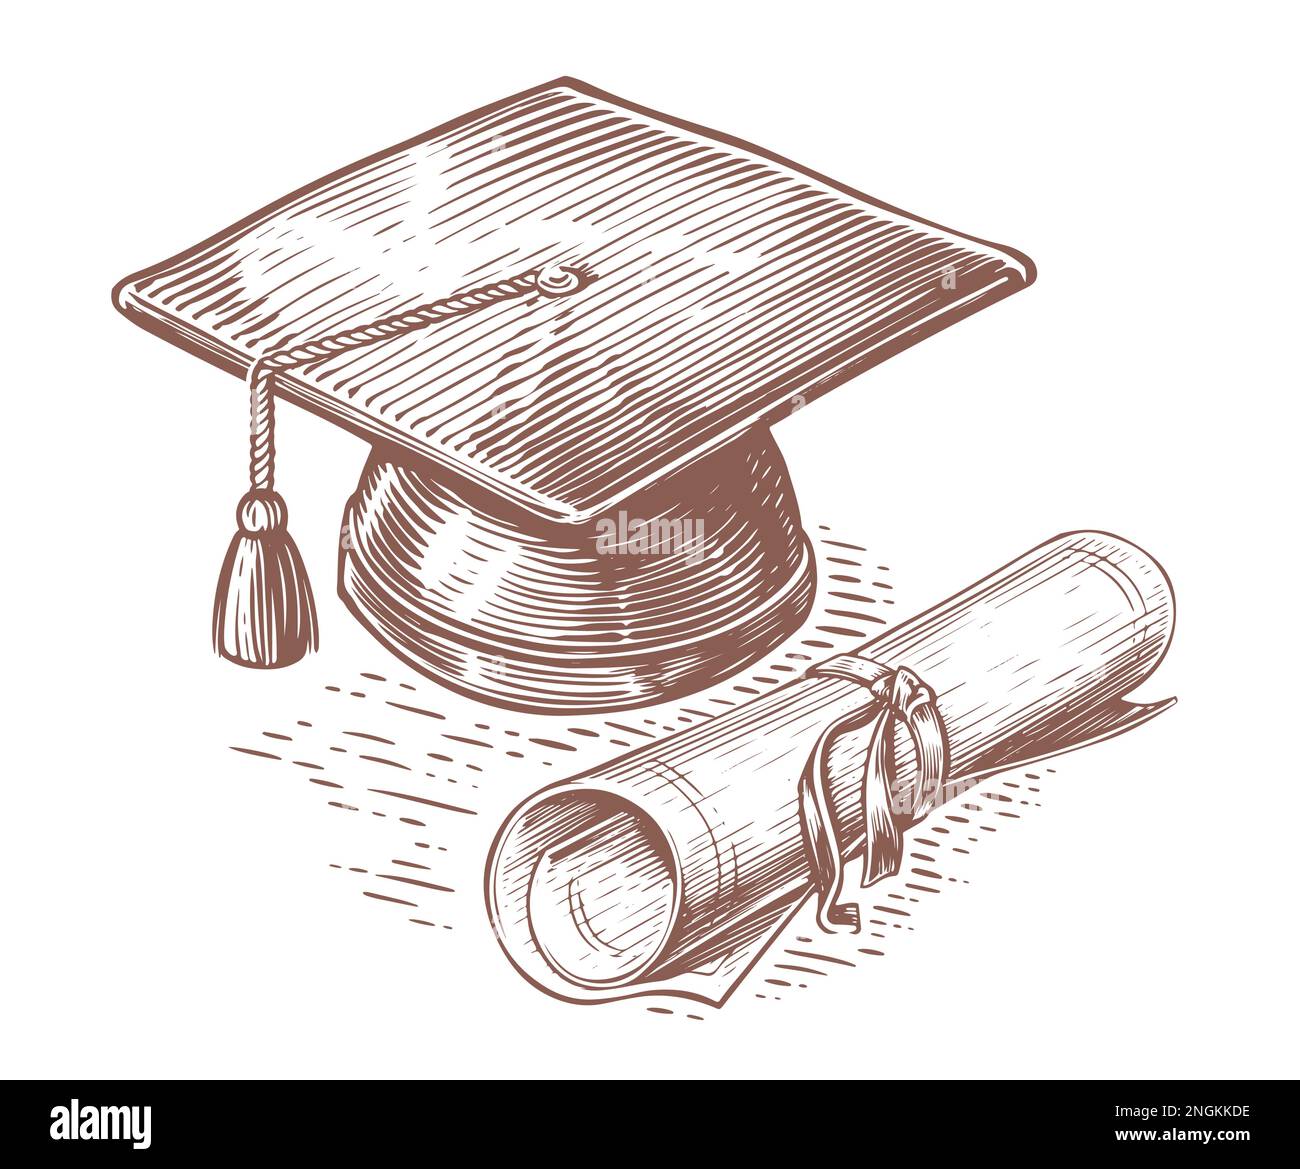 Cappellino di laurea e diploma disegnati a mano in stile schizzo. Laurea accademica, concetto di istruzione. Illustrazione vettoriale vintage Illustrazione Vettoriale